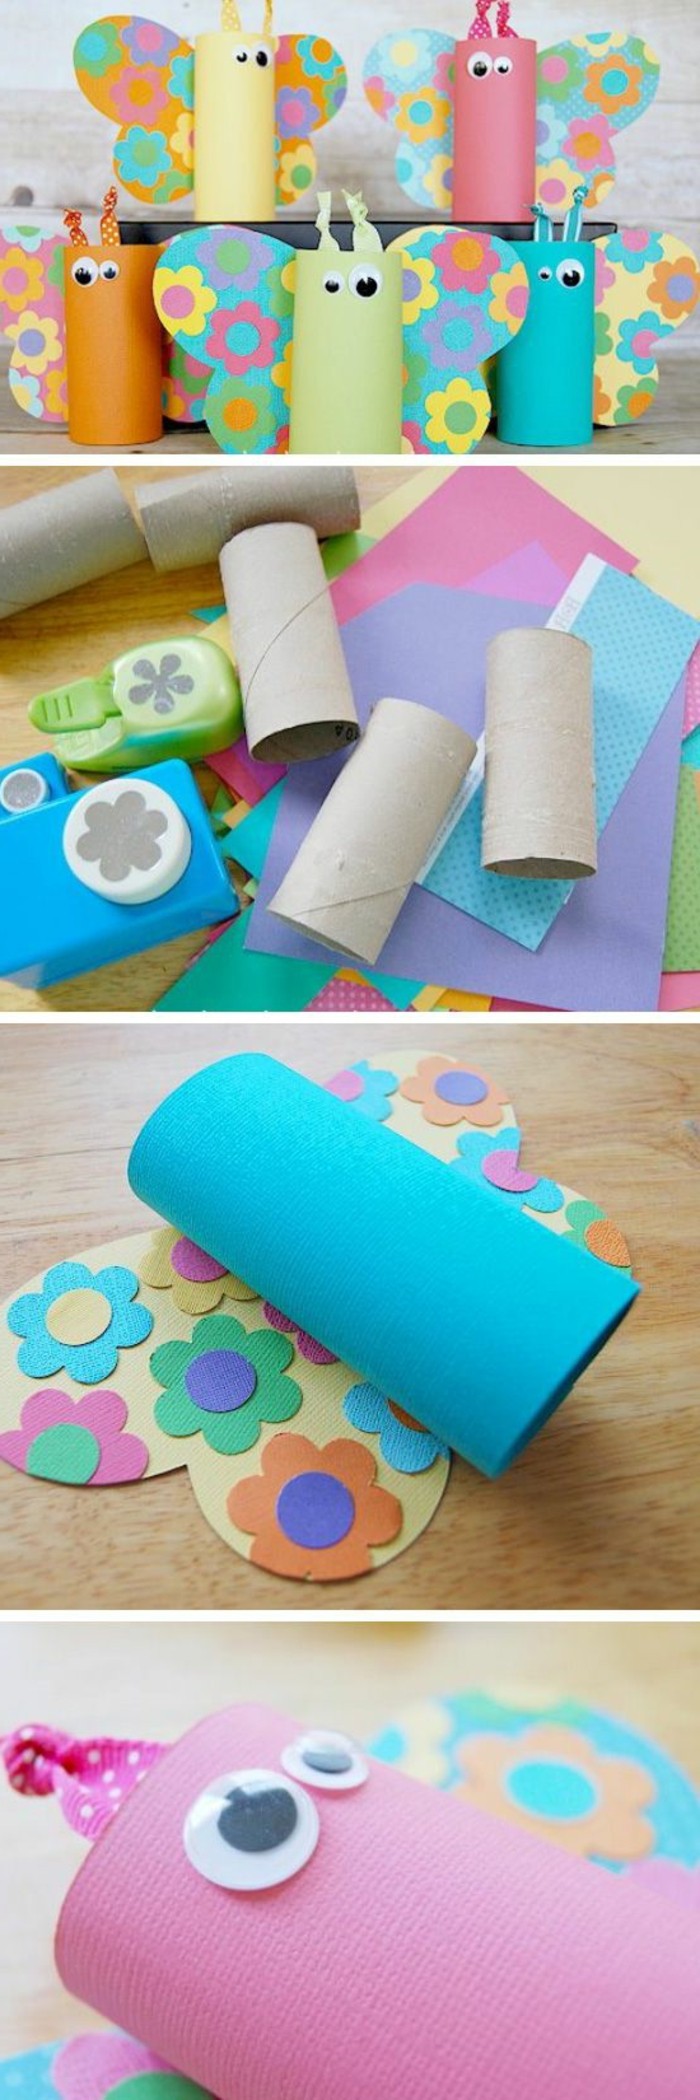 activité-créative-primaire-maternelle-comment-faire-des-papillons-multicolores-de-rouleau-de-papier-toilette-ailes-en-papier-des-yeux-mobiles